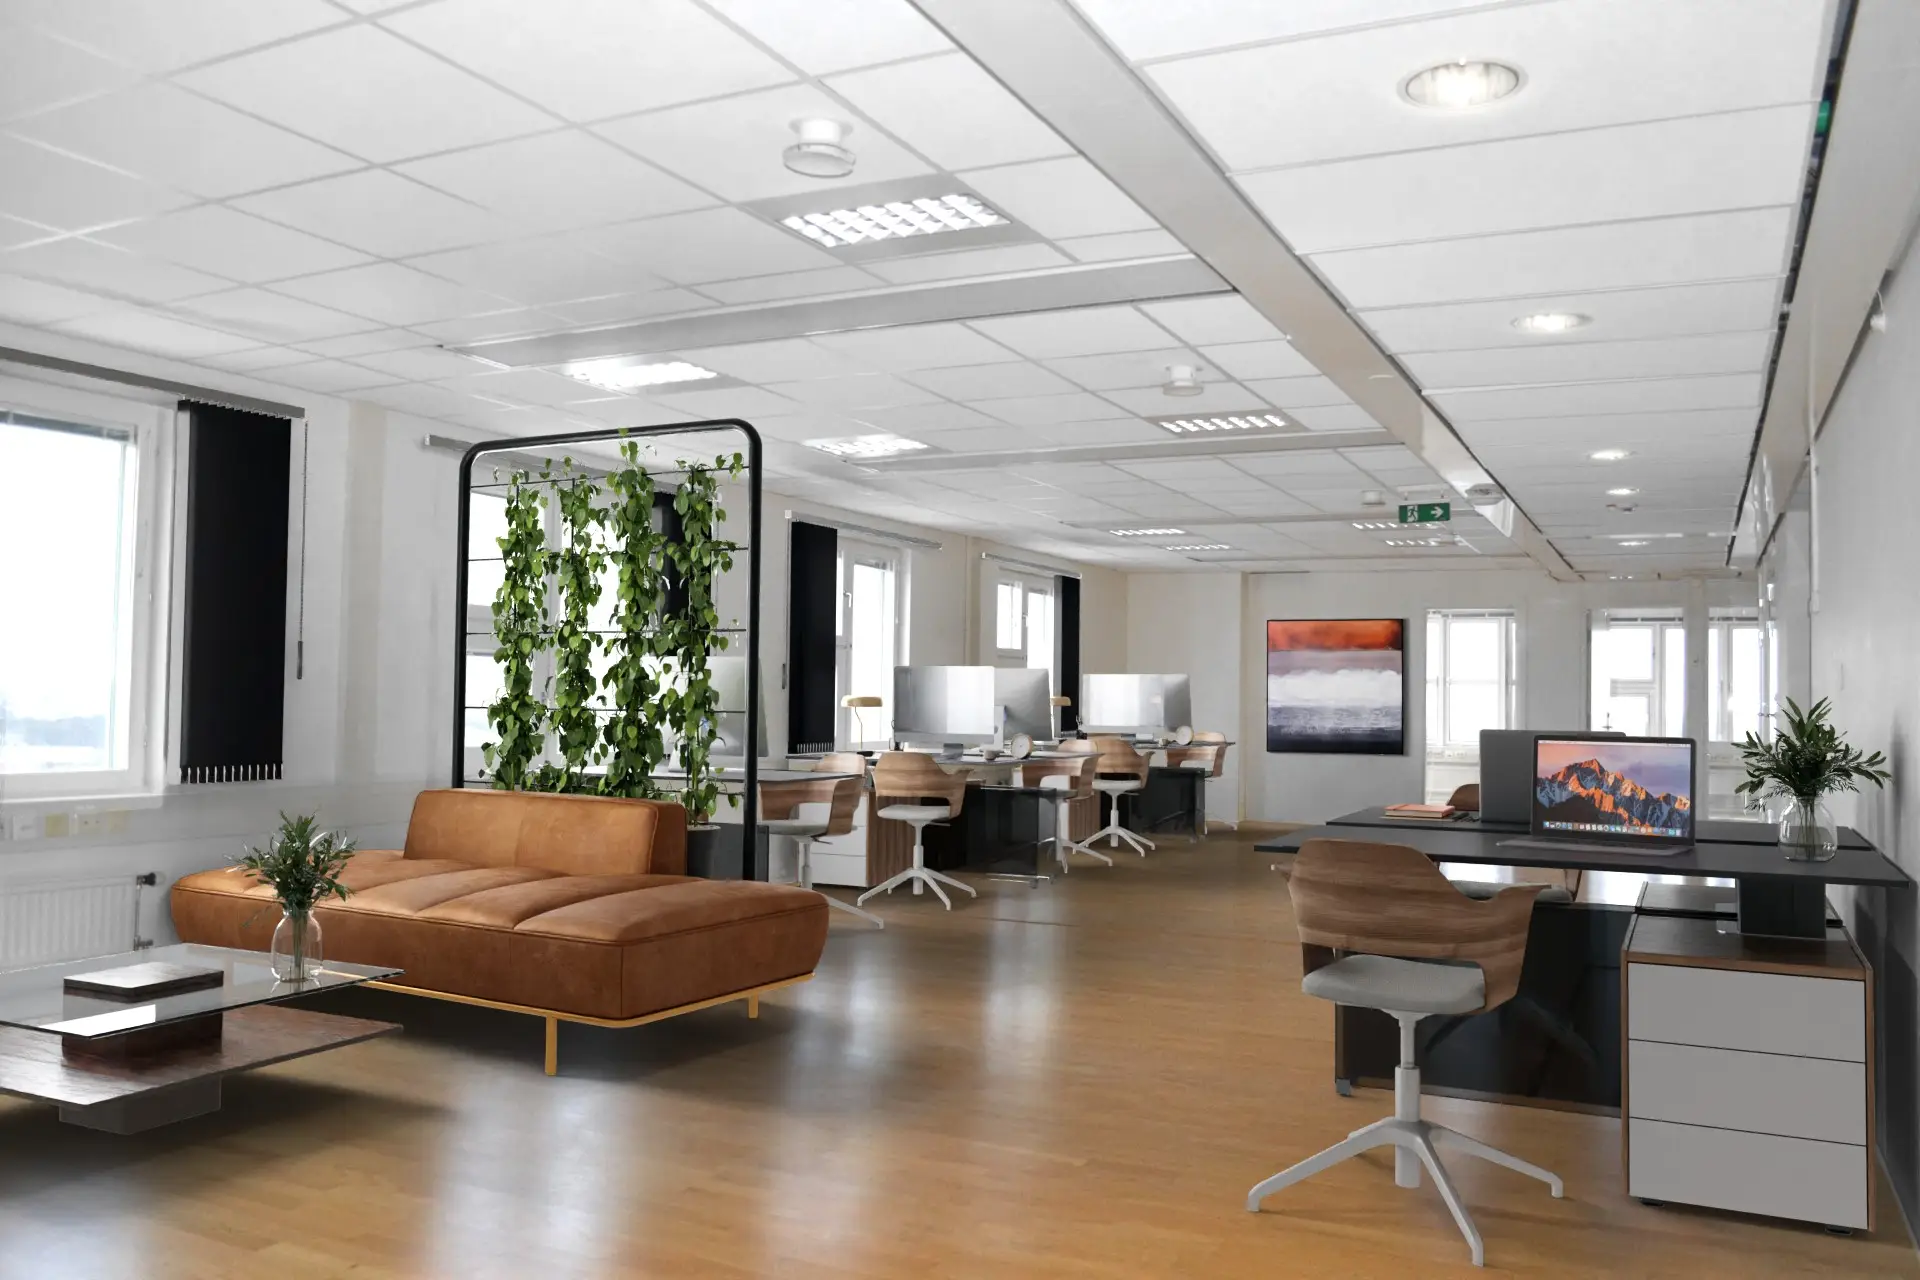 Kontorsyta med flera skrivbord och datorer, en skinnsoffa, stora fönster, gröna växter och en abstrakt målning på väggen. rymlig och starkt upplyst miljö.